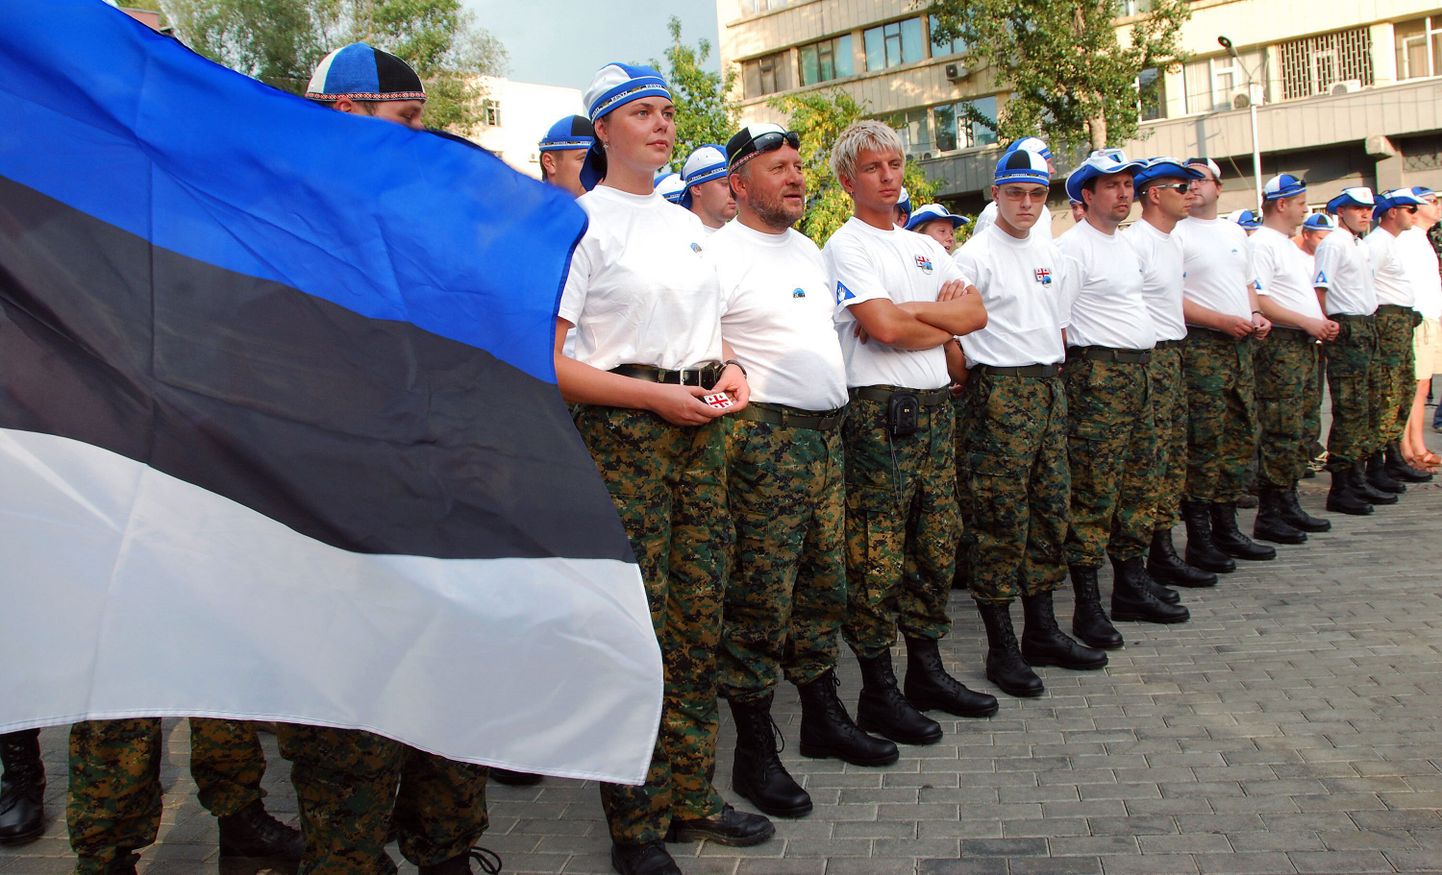 Gruusiasse läinud Eesti vabatahtlikke ähvardab karistus Punase Risti liikmetena esinemise eest.